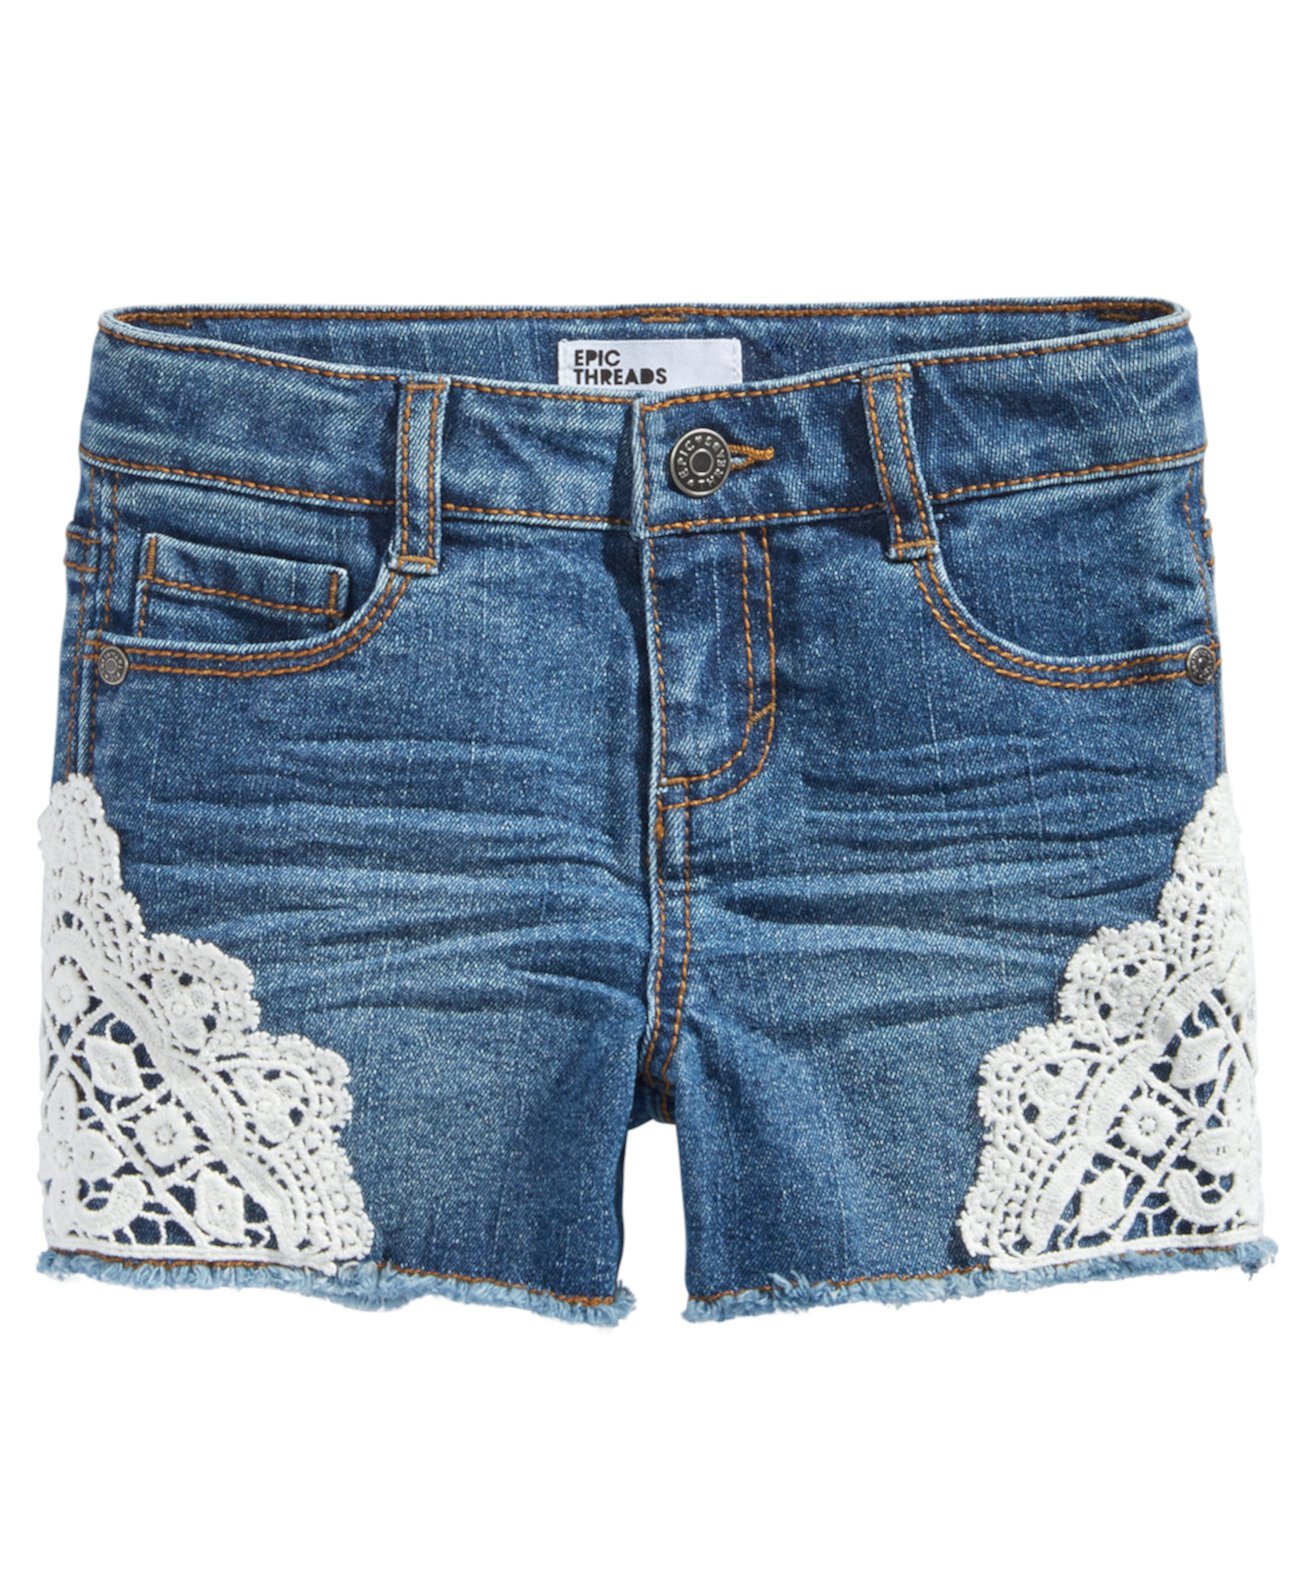 Шорты из джинсовой ткани для девочек с крючком Hemt, созданные для Macy's Epic Threads